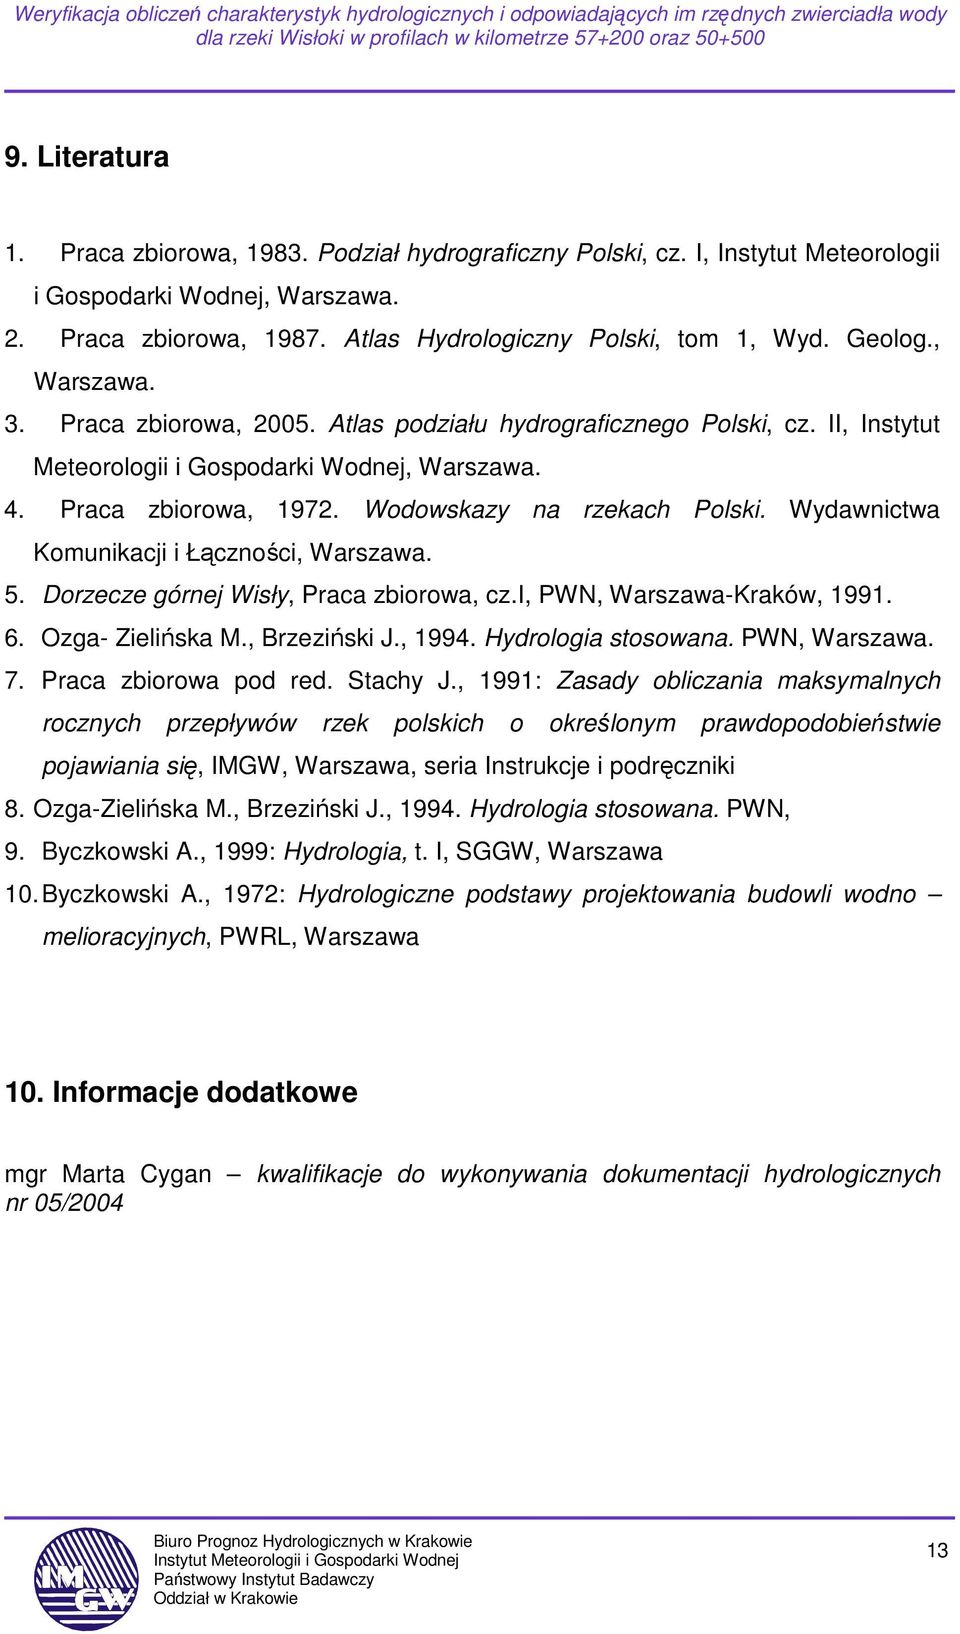 Wydawnictwa Komunikacji i Łączności, Warszawa. 5. Dorzecze górnej Wisły, Praca zbiorowa, cz.i, PWN, Warszawa-Kraków, 1991. 6. Ozga- Zielińska M., Brzeziński J., 1994. Hydrologia stosowana.